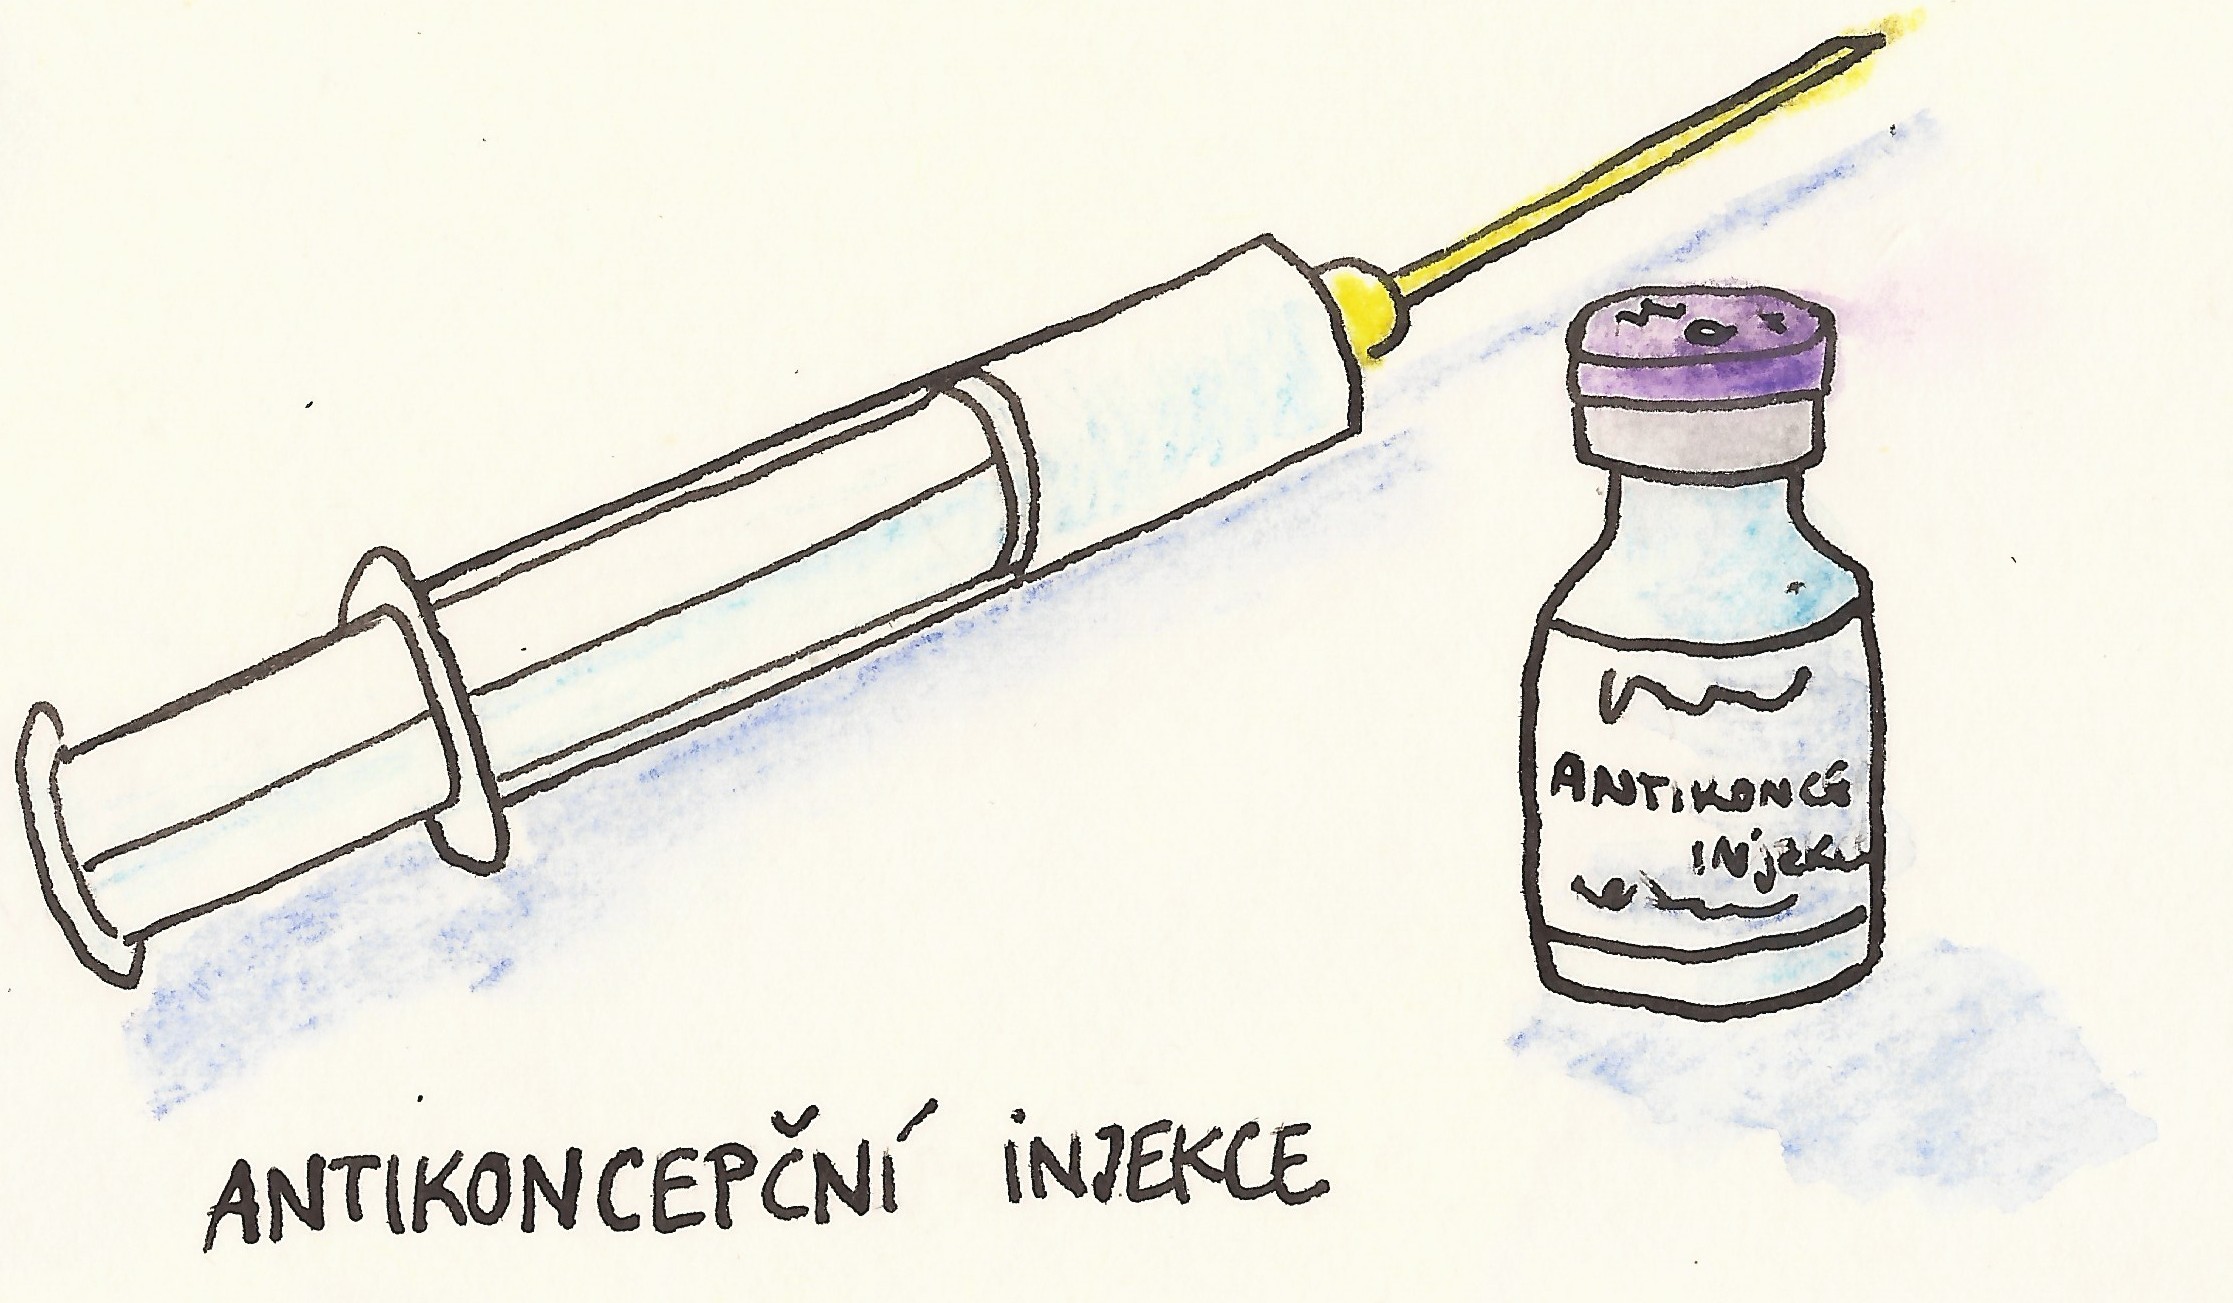 antikoncepce - injekce